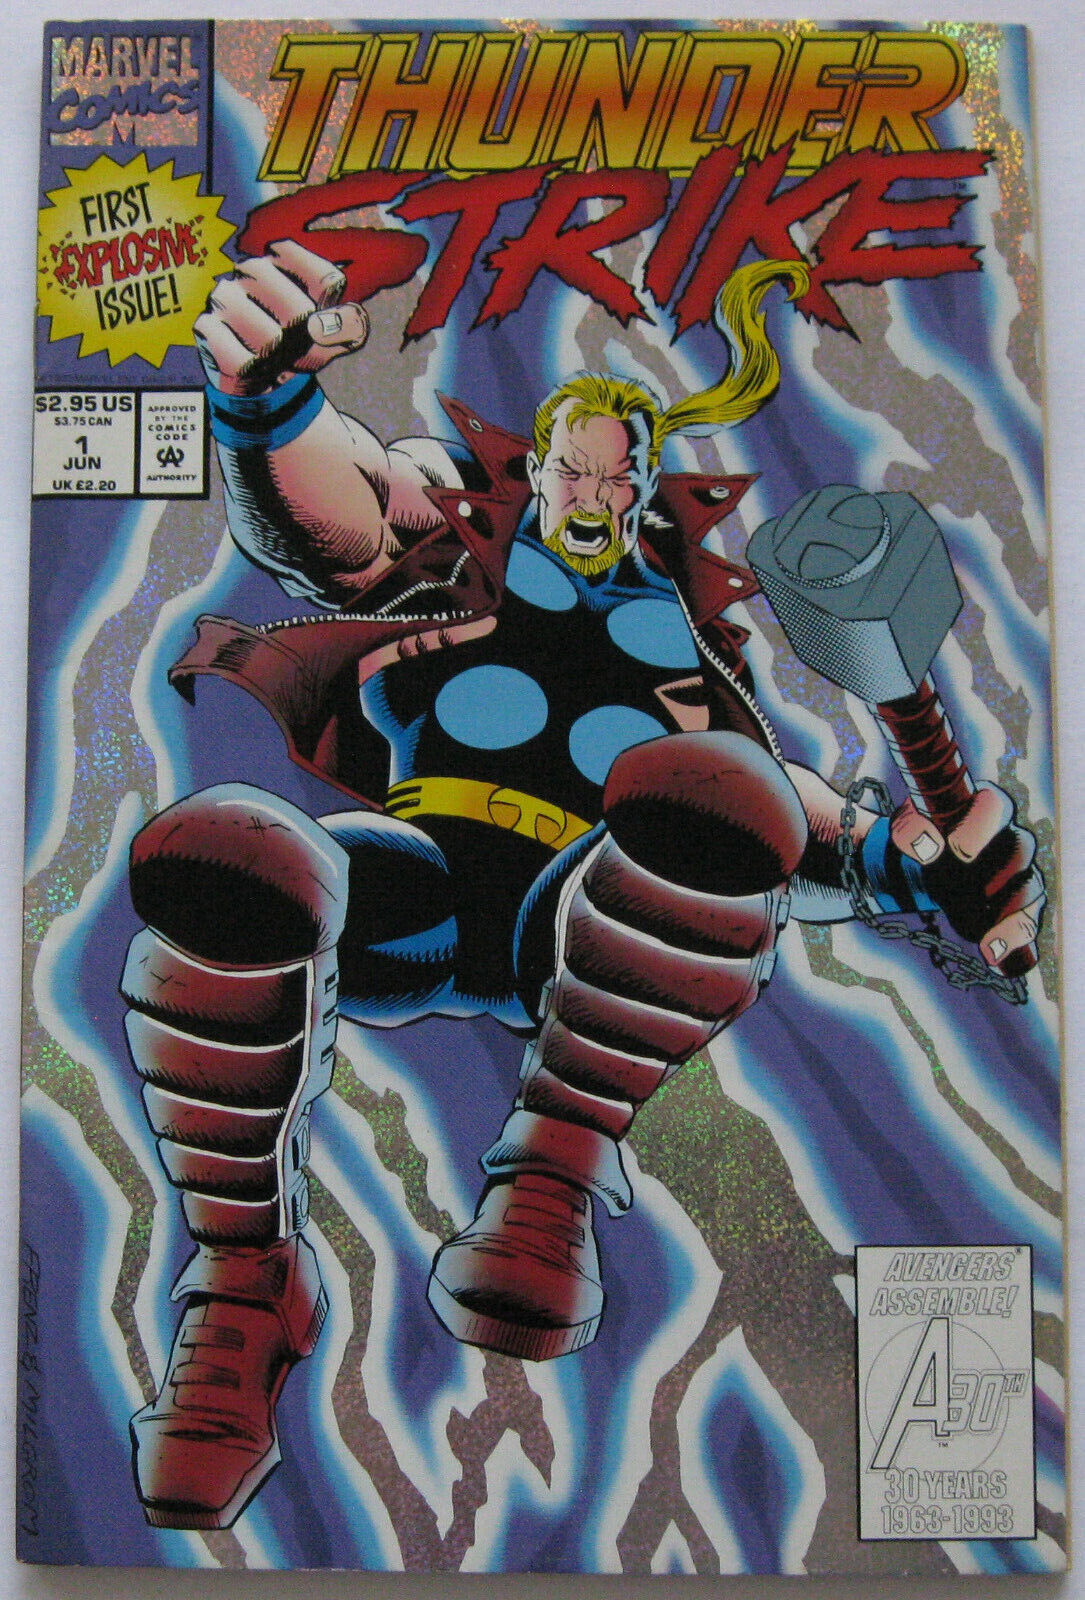 Thunderstrike #1 (Jun 1993, Marvel), VFN-NM condition (9.0), Bloodaxe returns